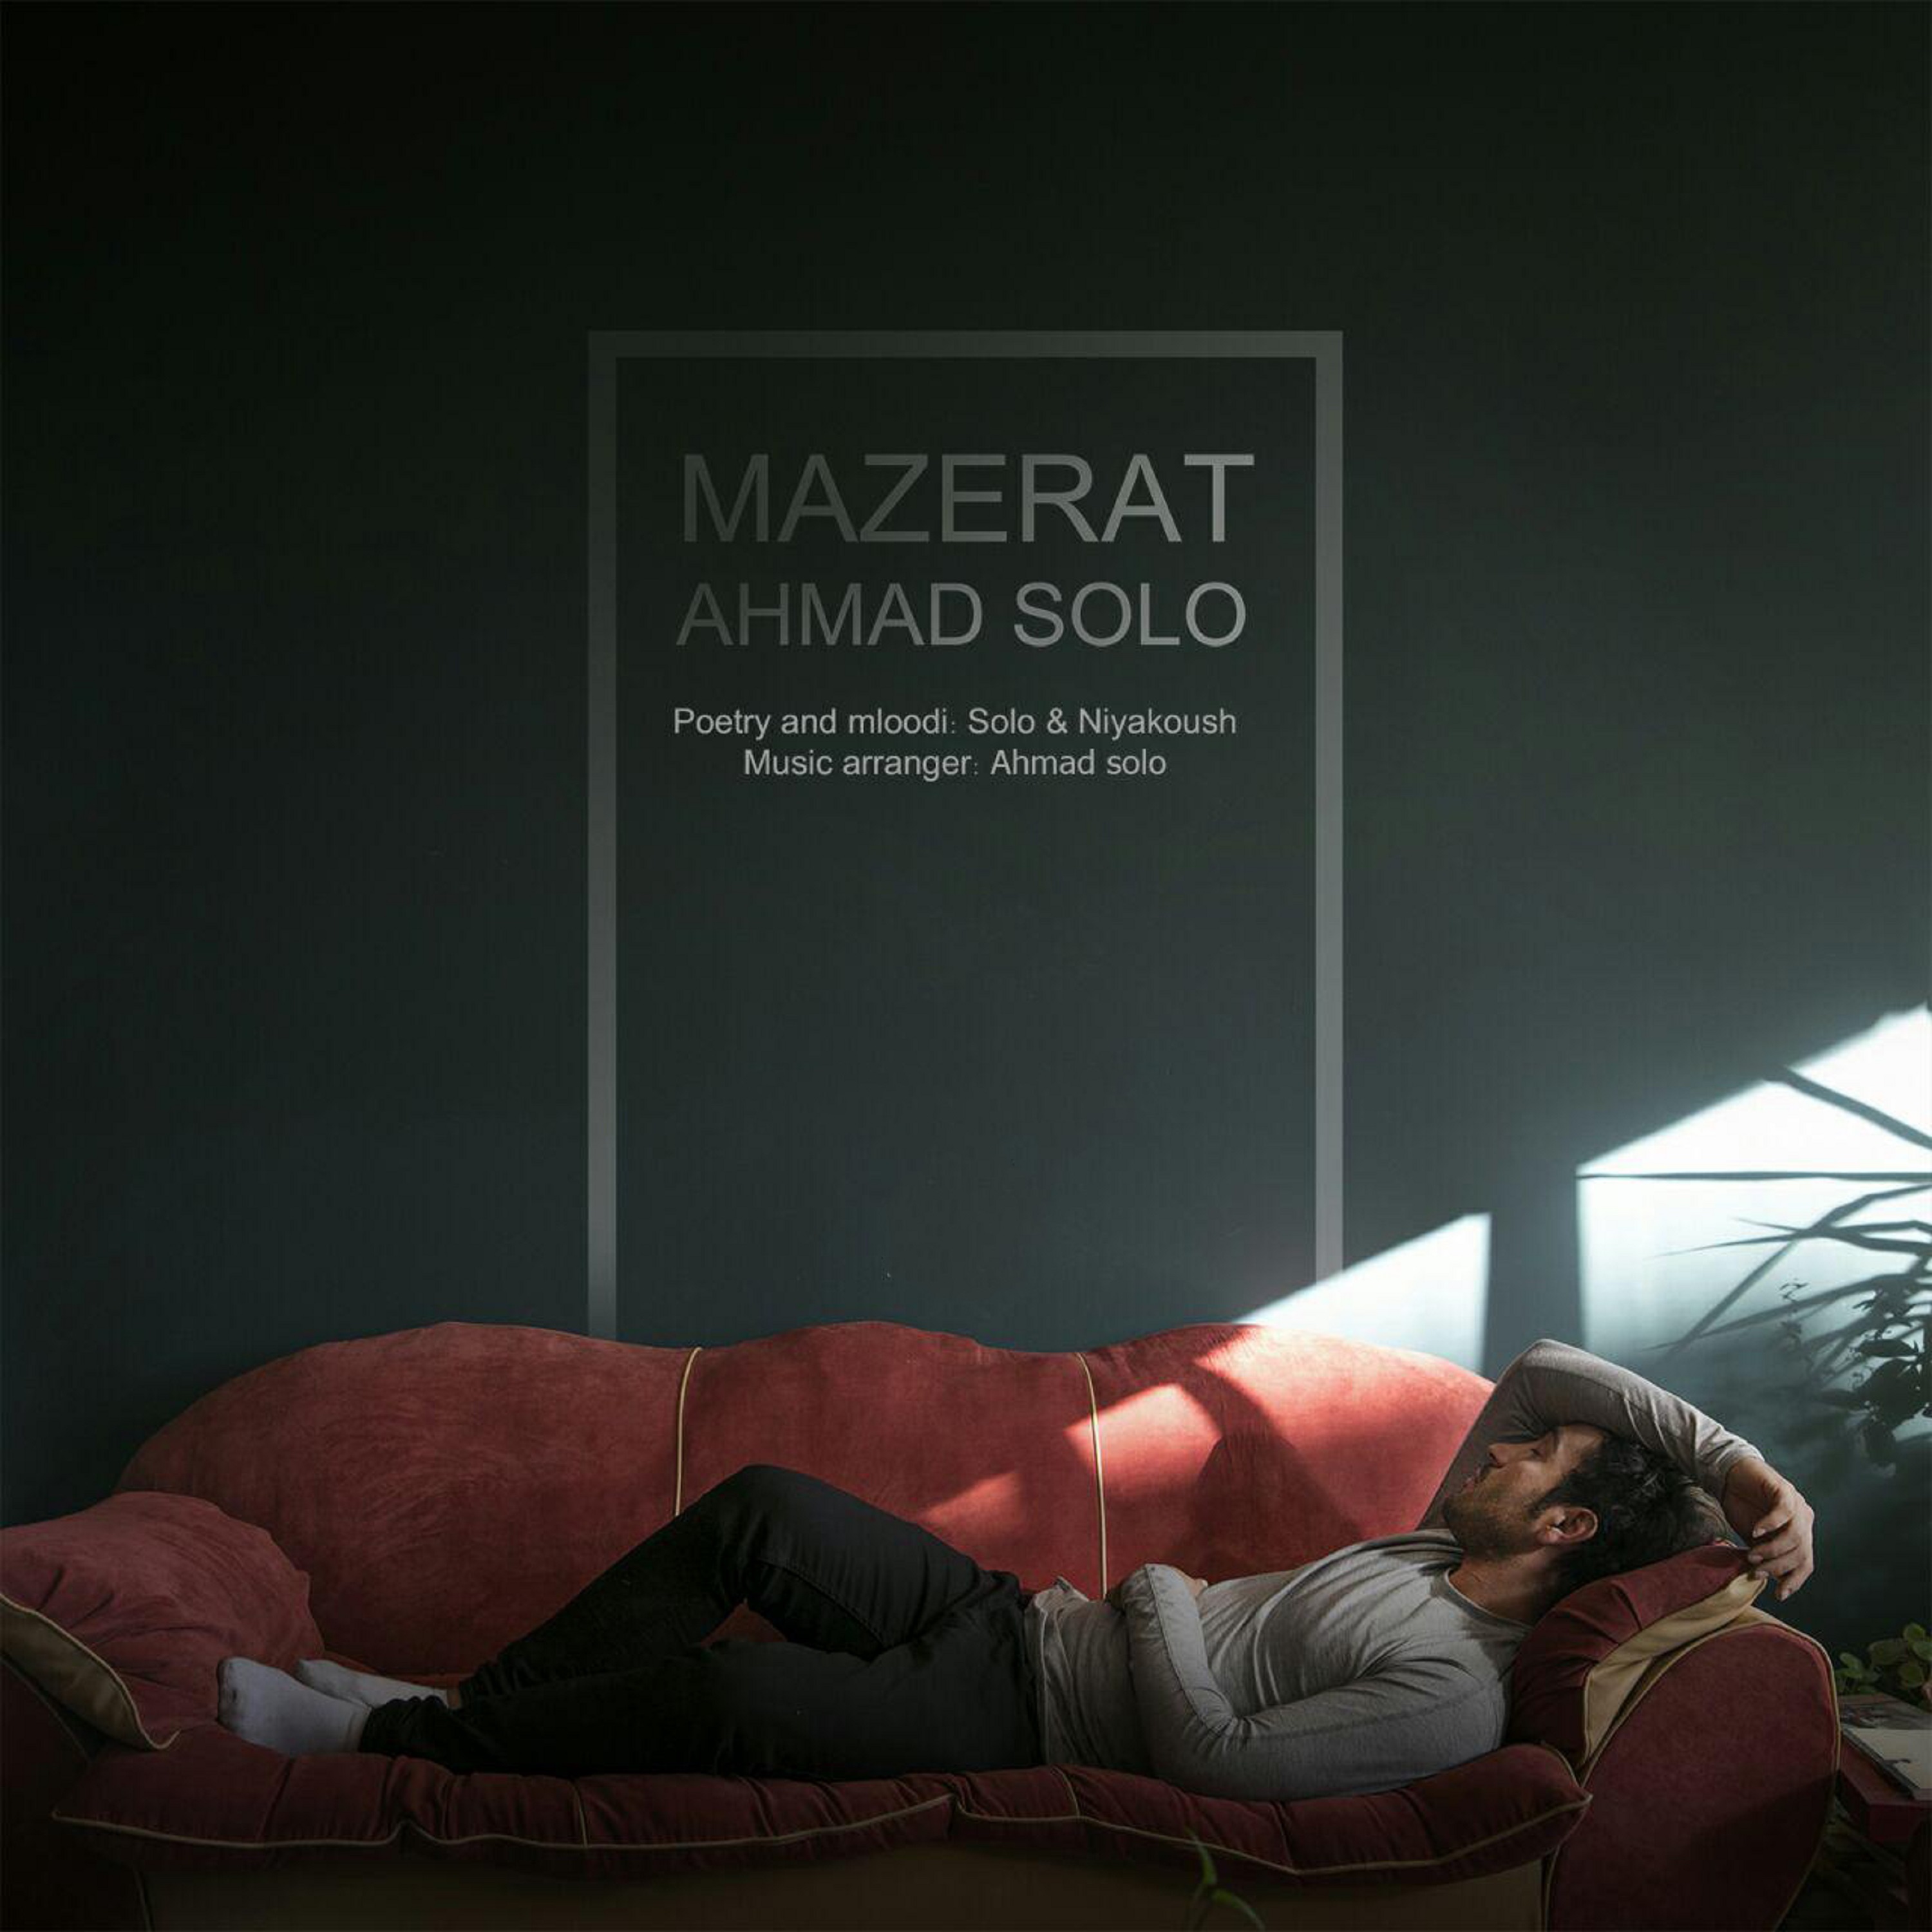  دانلود آهنگ جدید احمد سولو - معذرت | Download New Music By Ahmad Solo - Mazerat